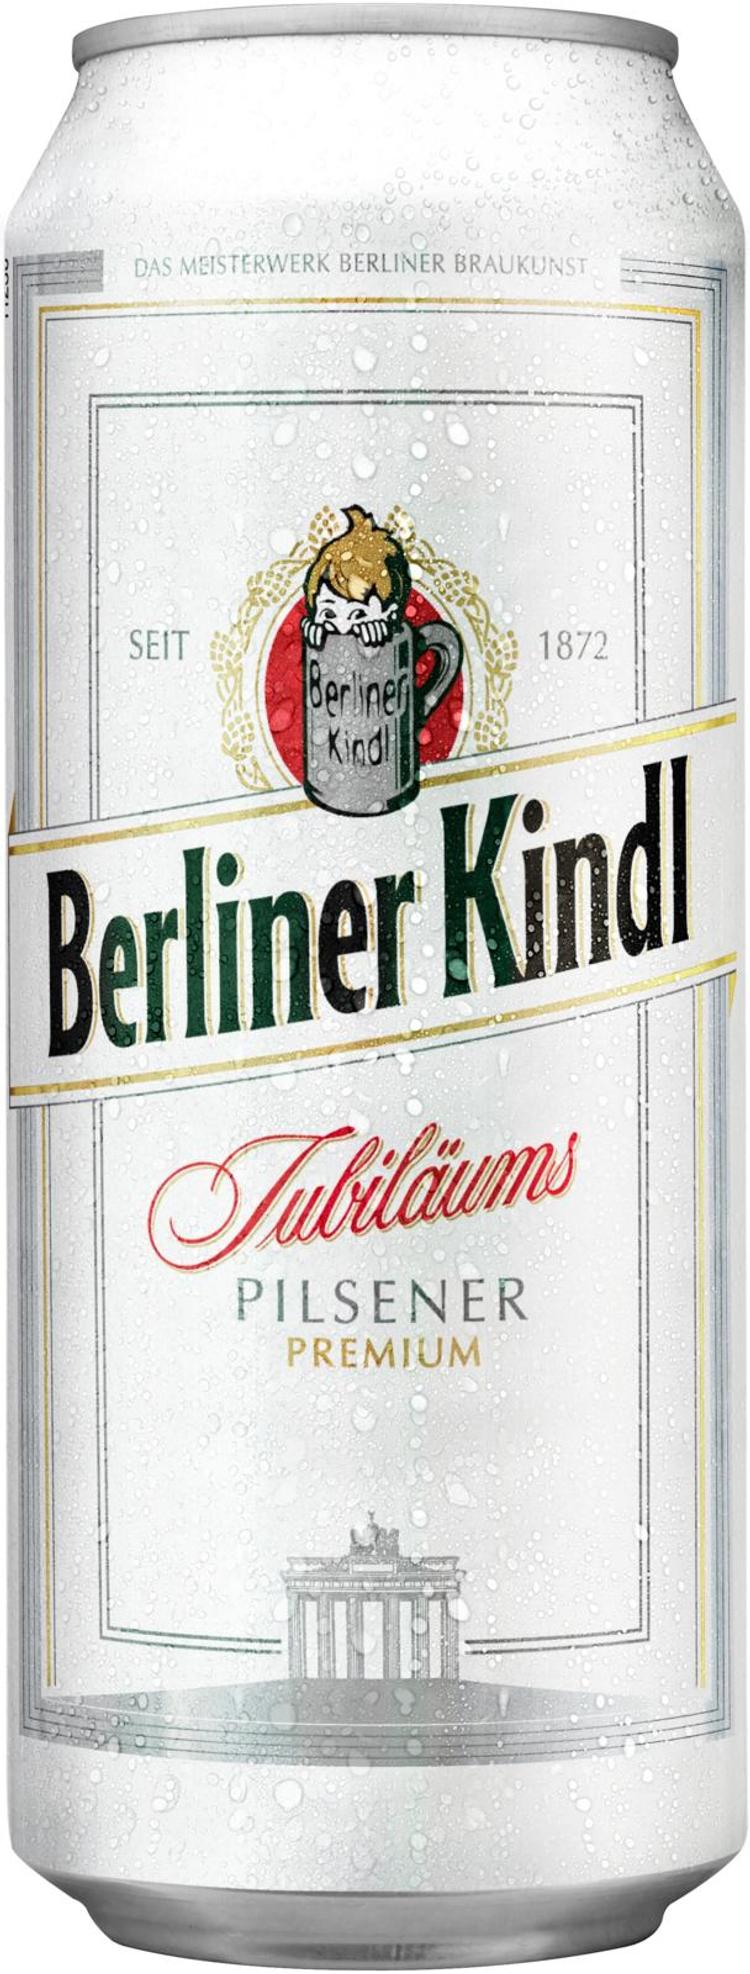 Berliner Kindl Jubiläums Pilsener 0,5 l olut tlk